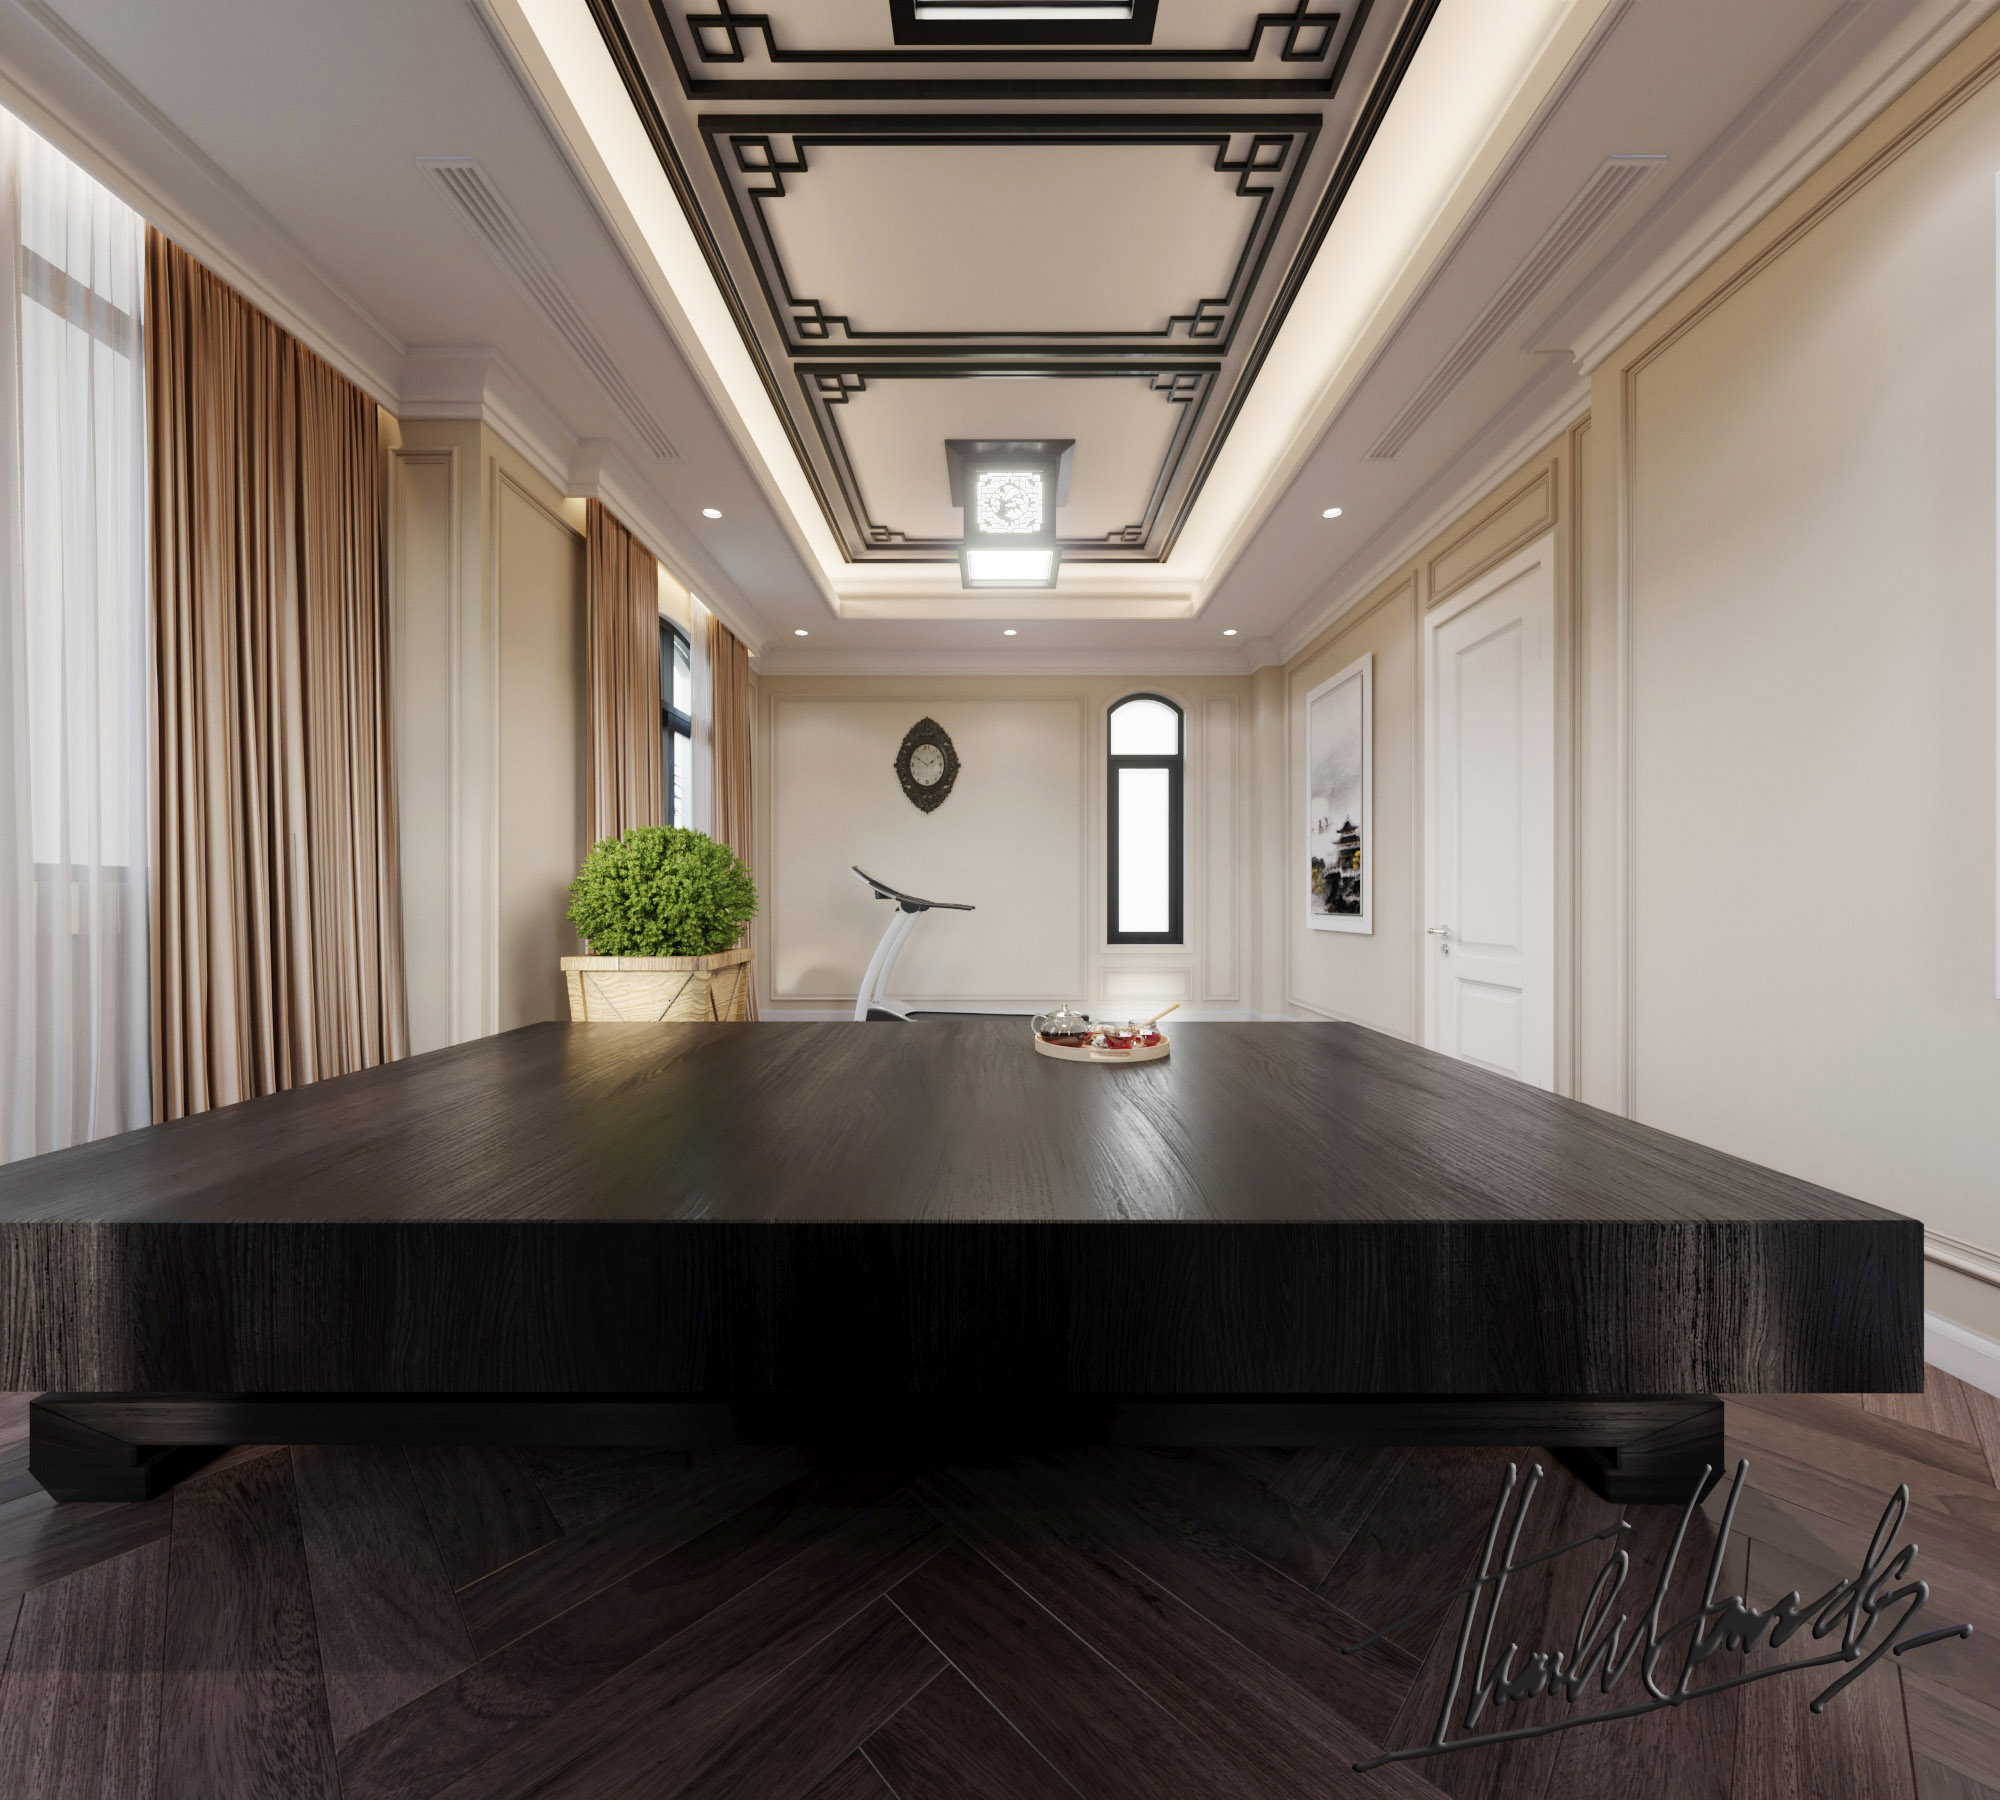 Thiết kế nội thất Biệt Thự tại Hải Phòng BIỆT THỰ MONACO - VINHOMES HP 1581395887 50